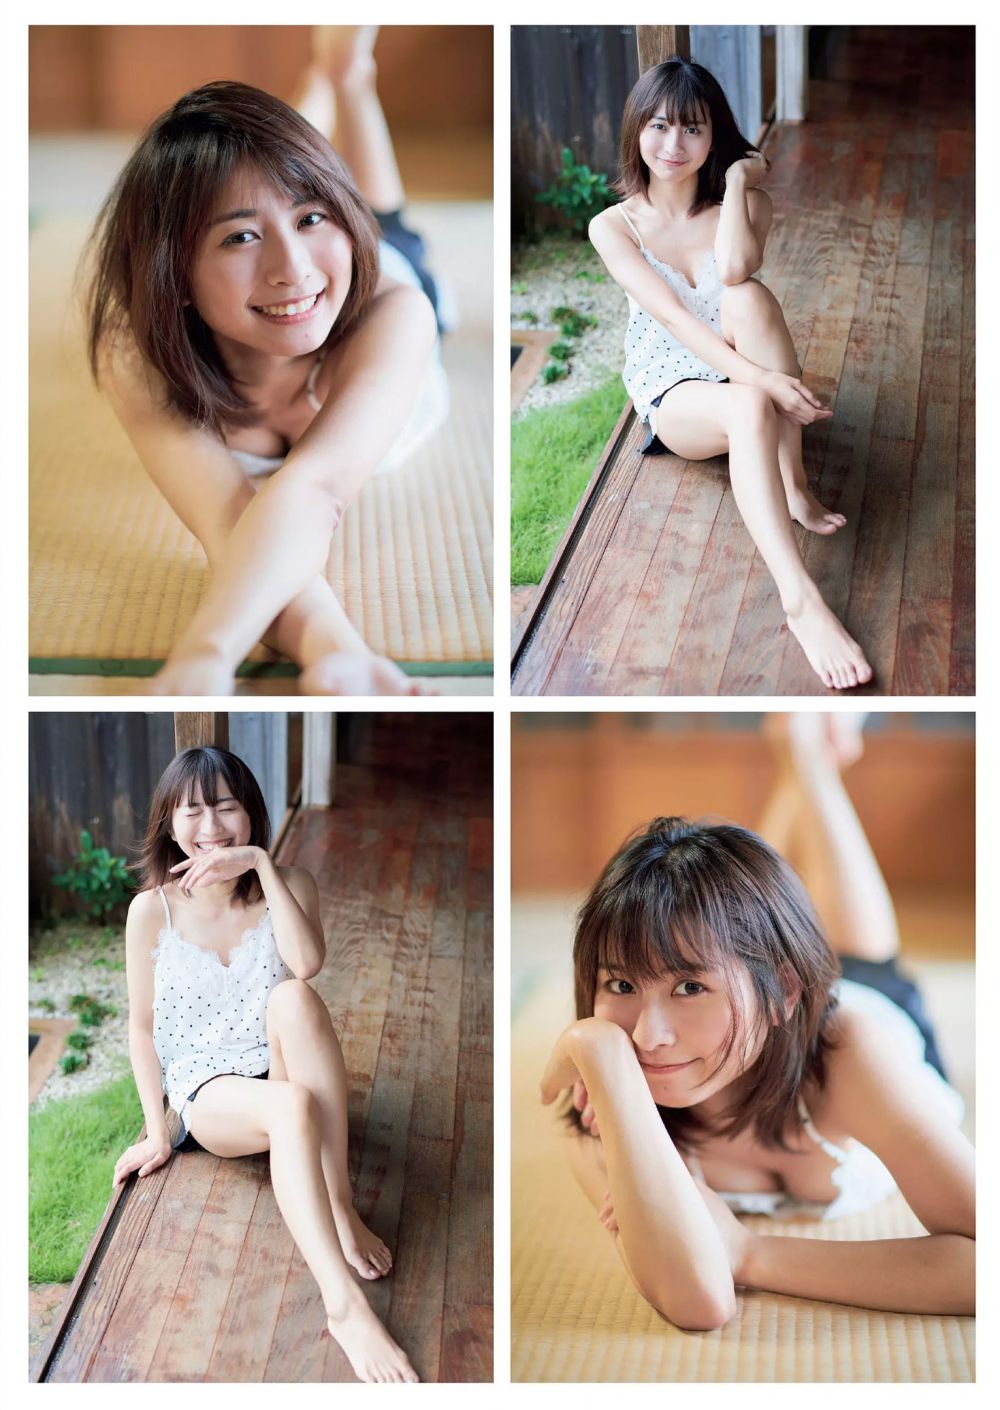 龙梦柔 Sexy and Hottest Photos , Latest Pics